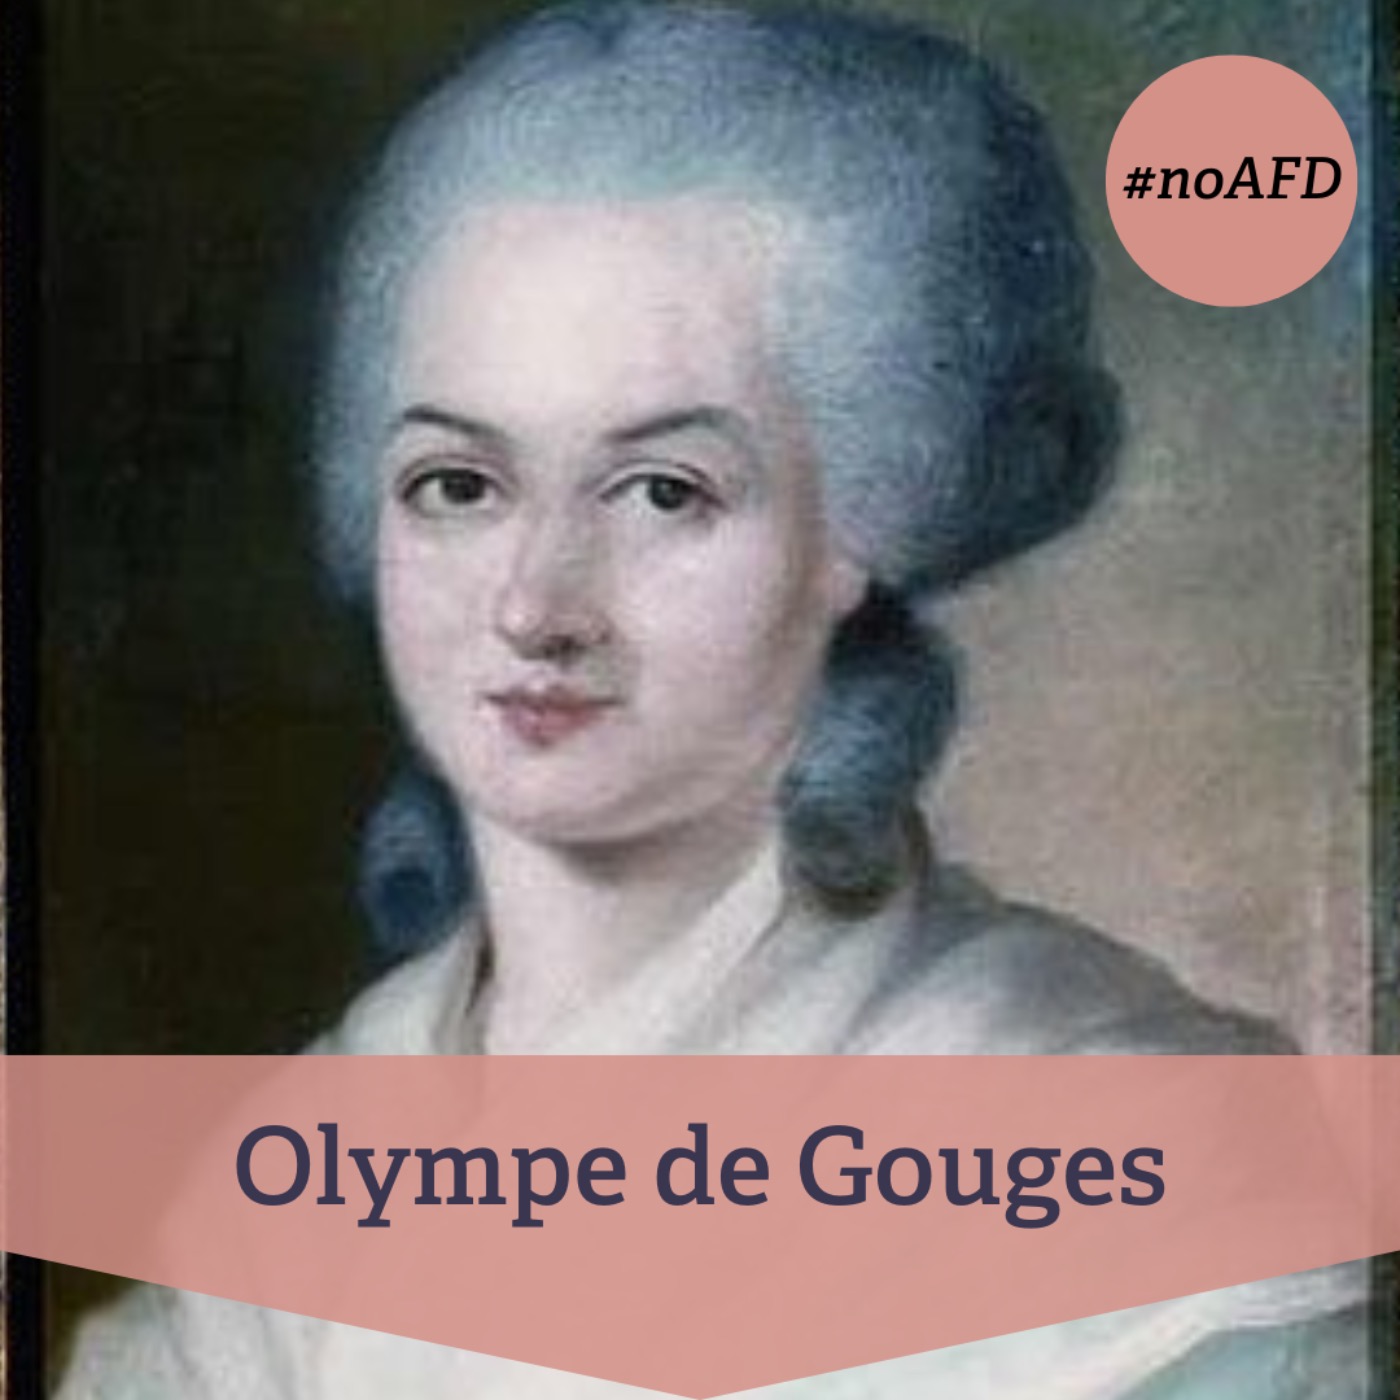 #229 Olympe de Gouges – französische Revolutionärin und wegweisende Frauenrechtlerin